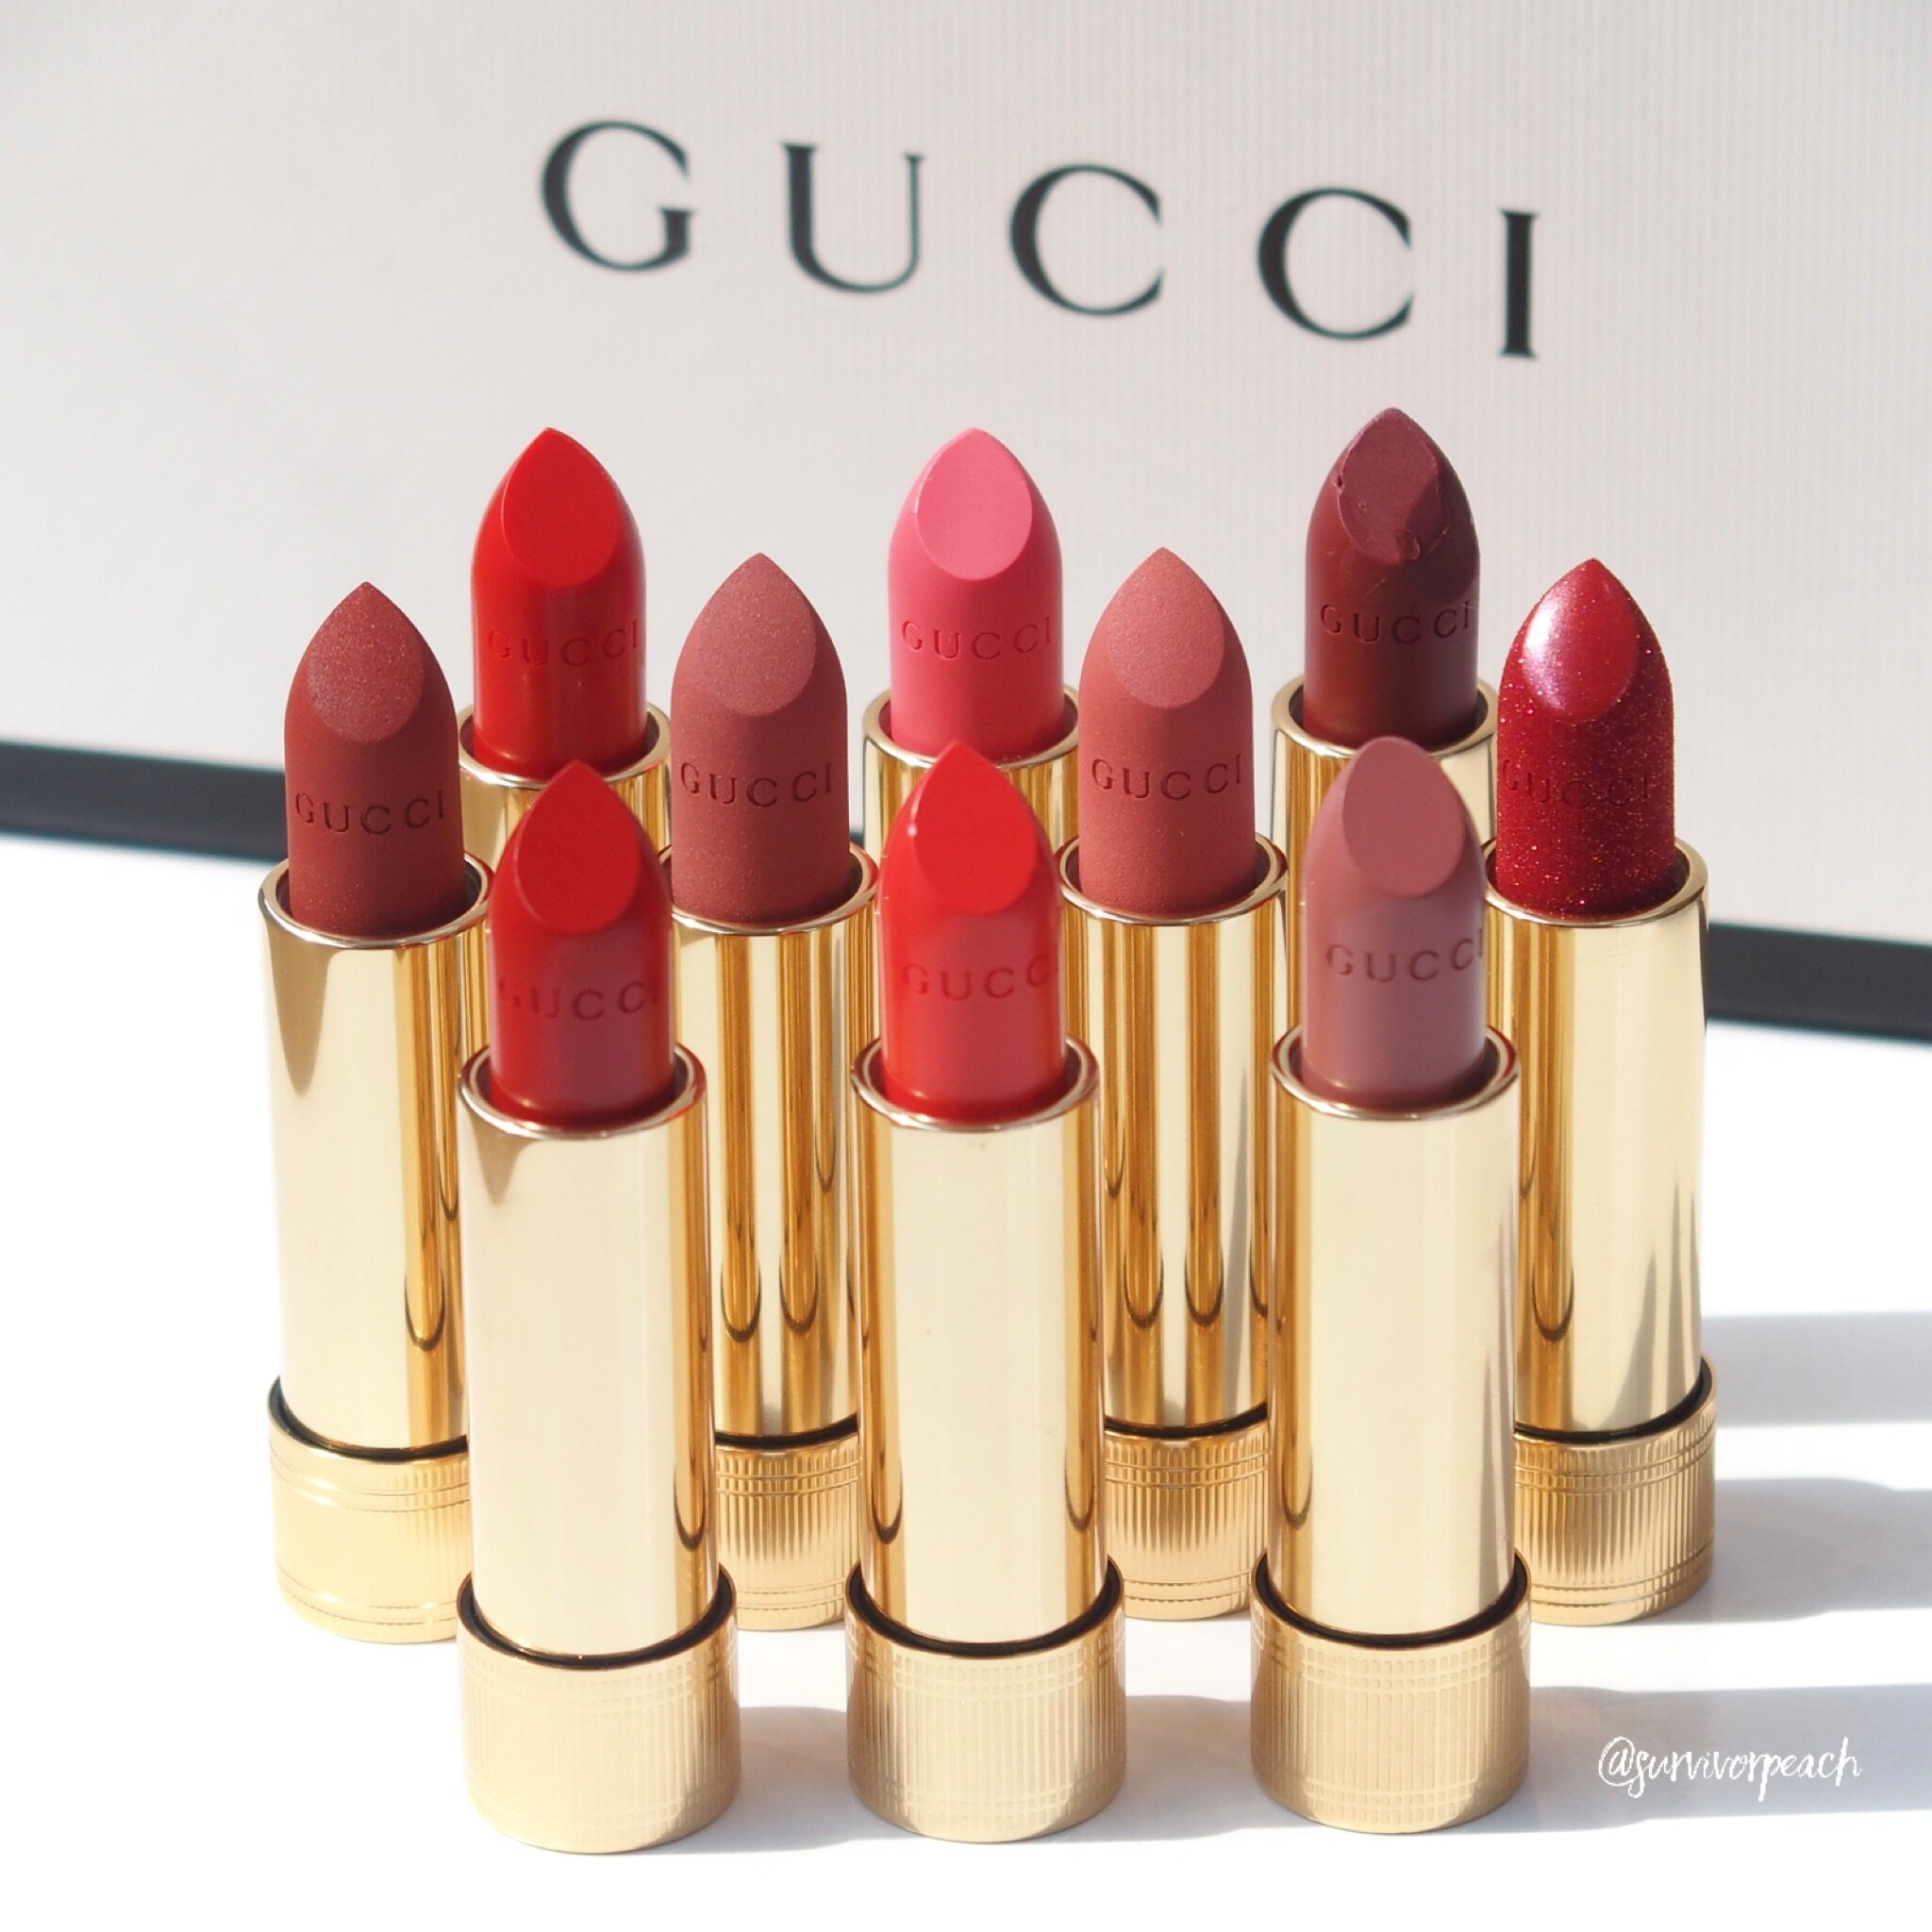 gucci lipstick price